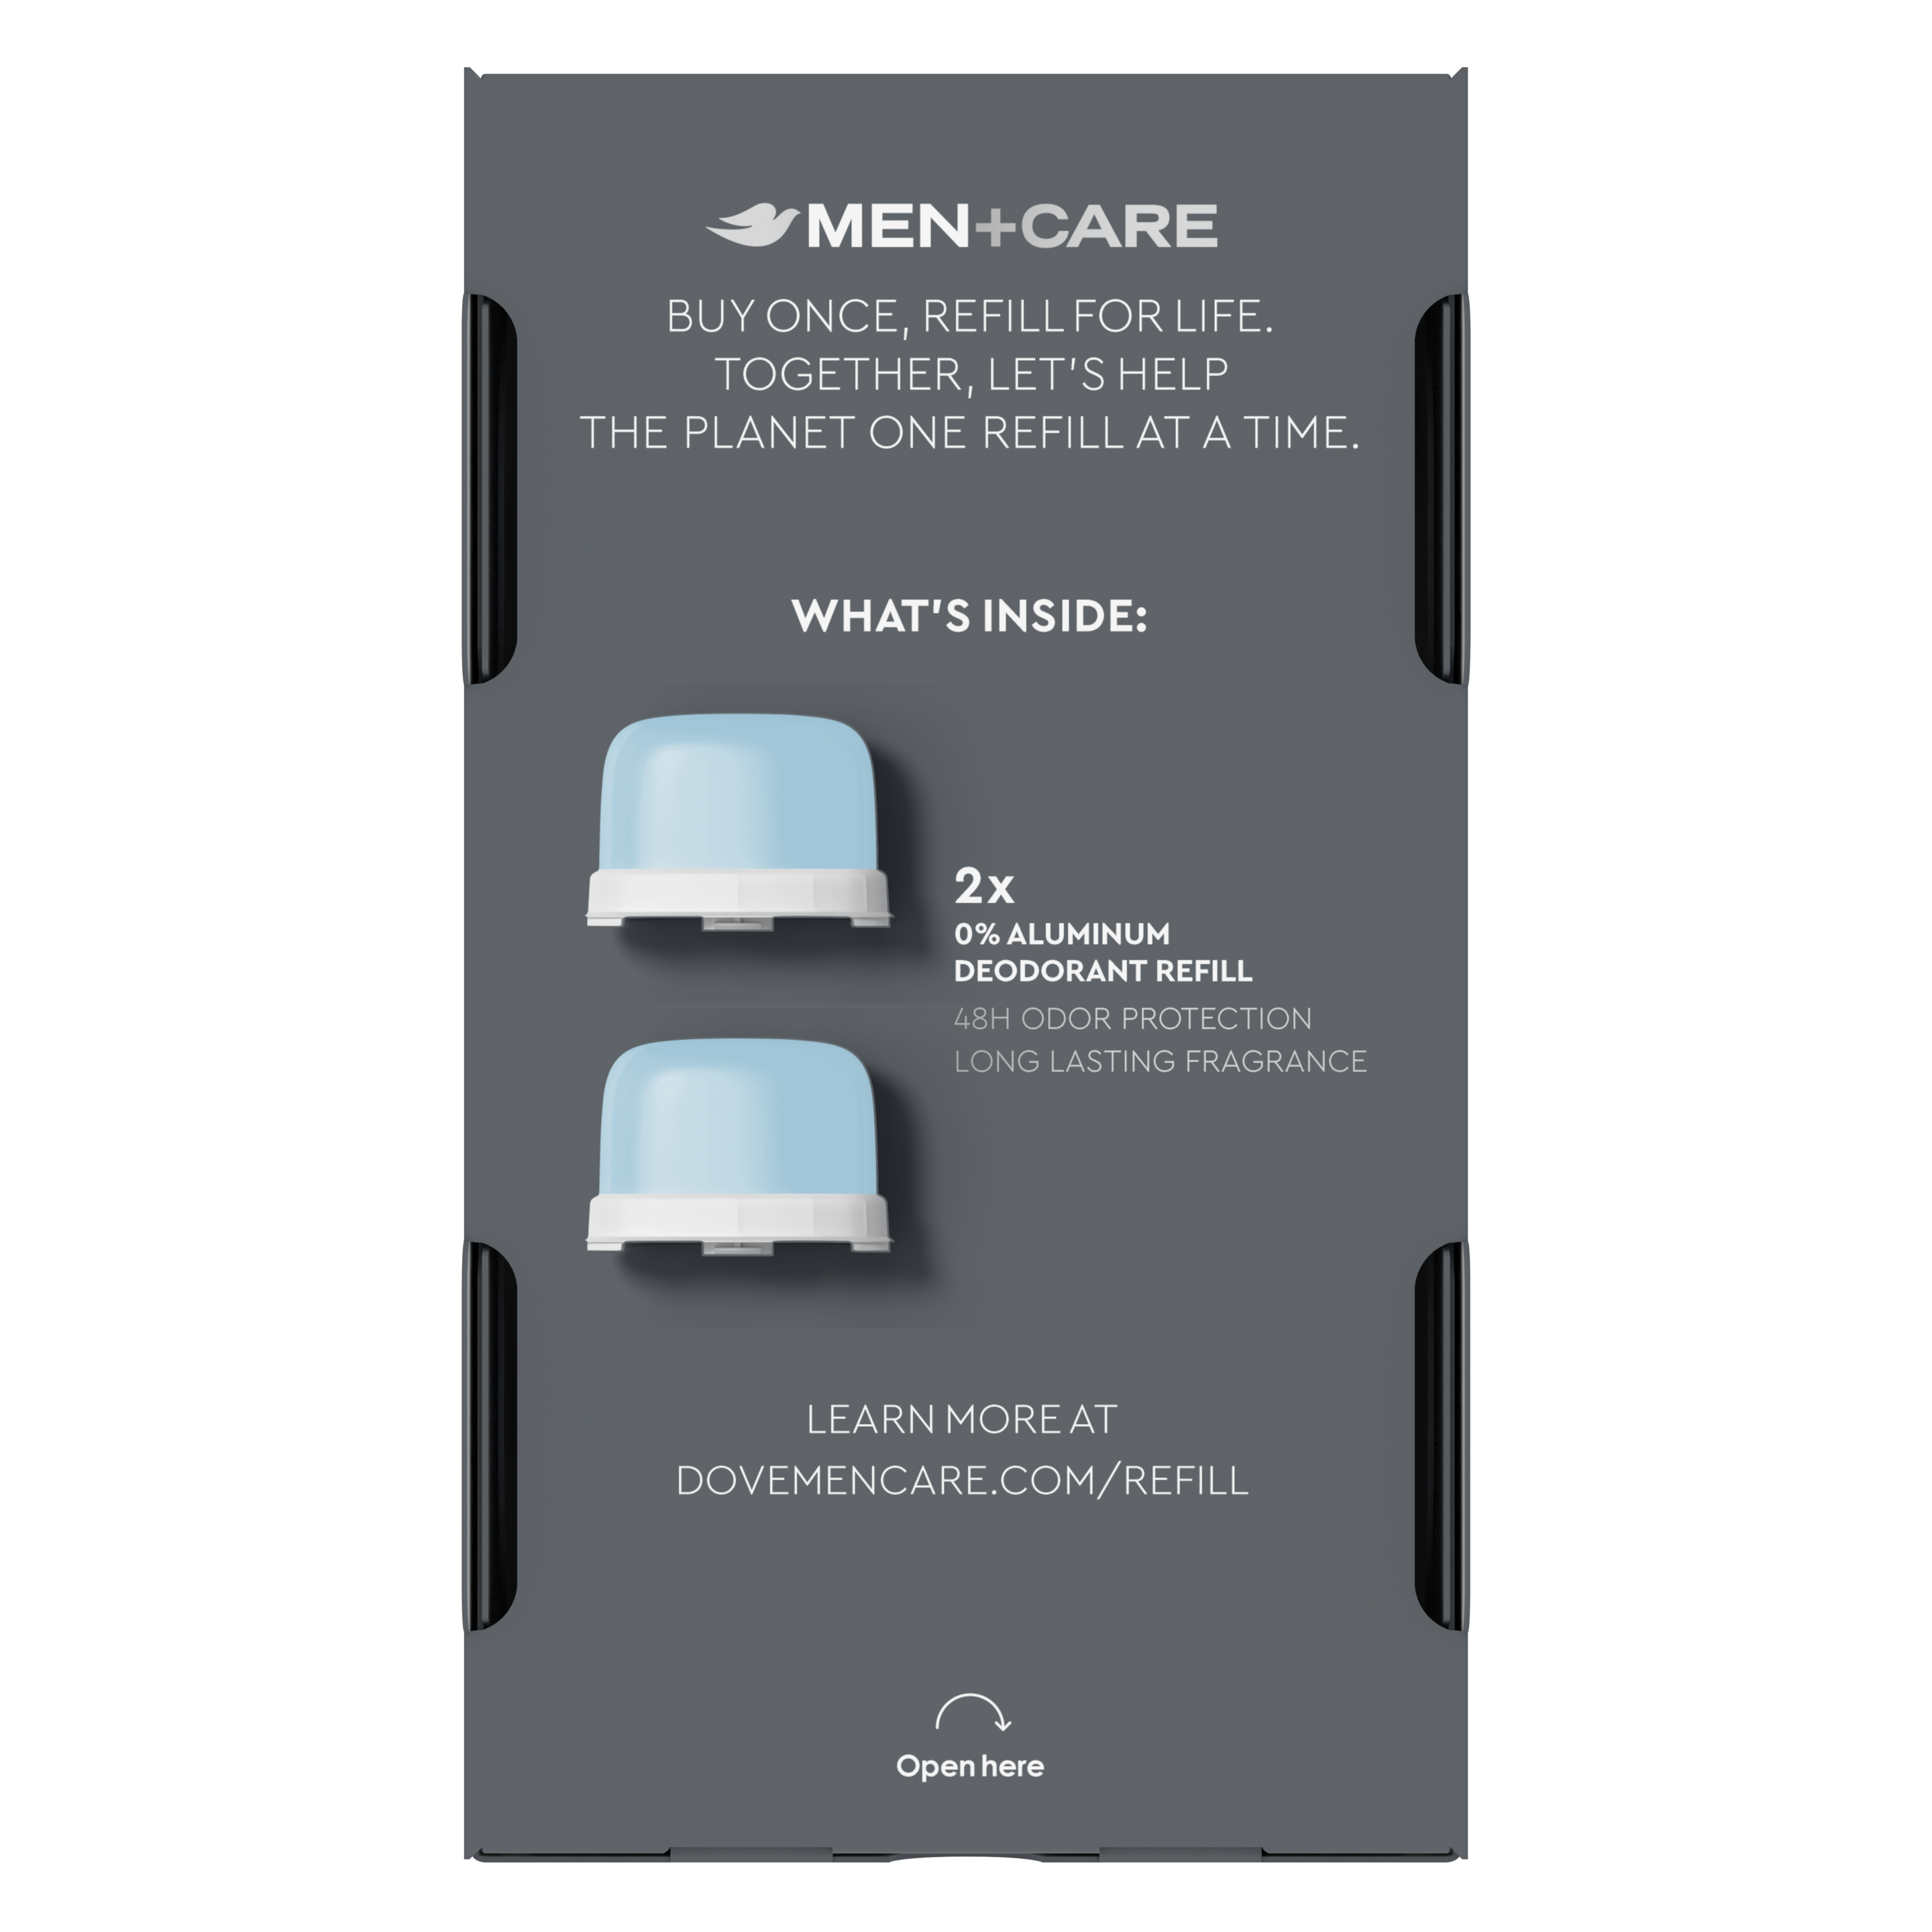 Men+Care Ultimate Clean Touch 0% Aluminum Deodorant Refill